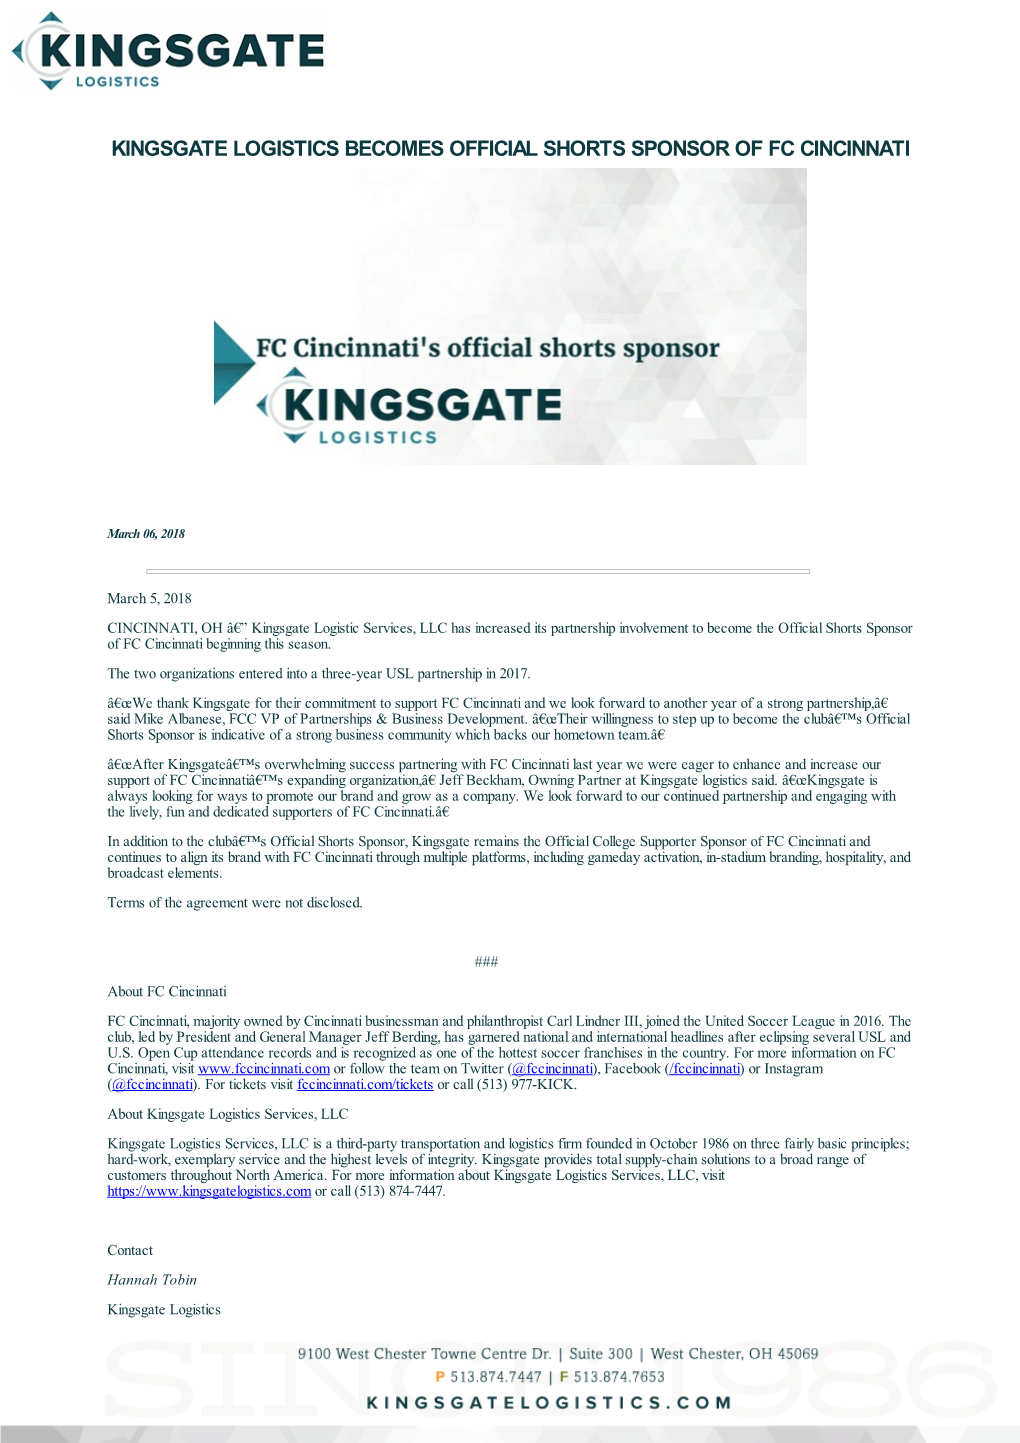 Kingsgate Logistics Becomes Official Shorts Sponsor of Fc Cincinnati